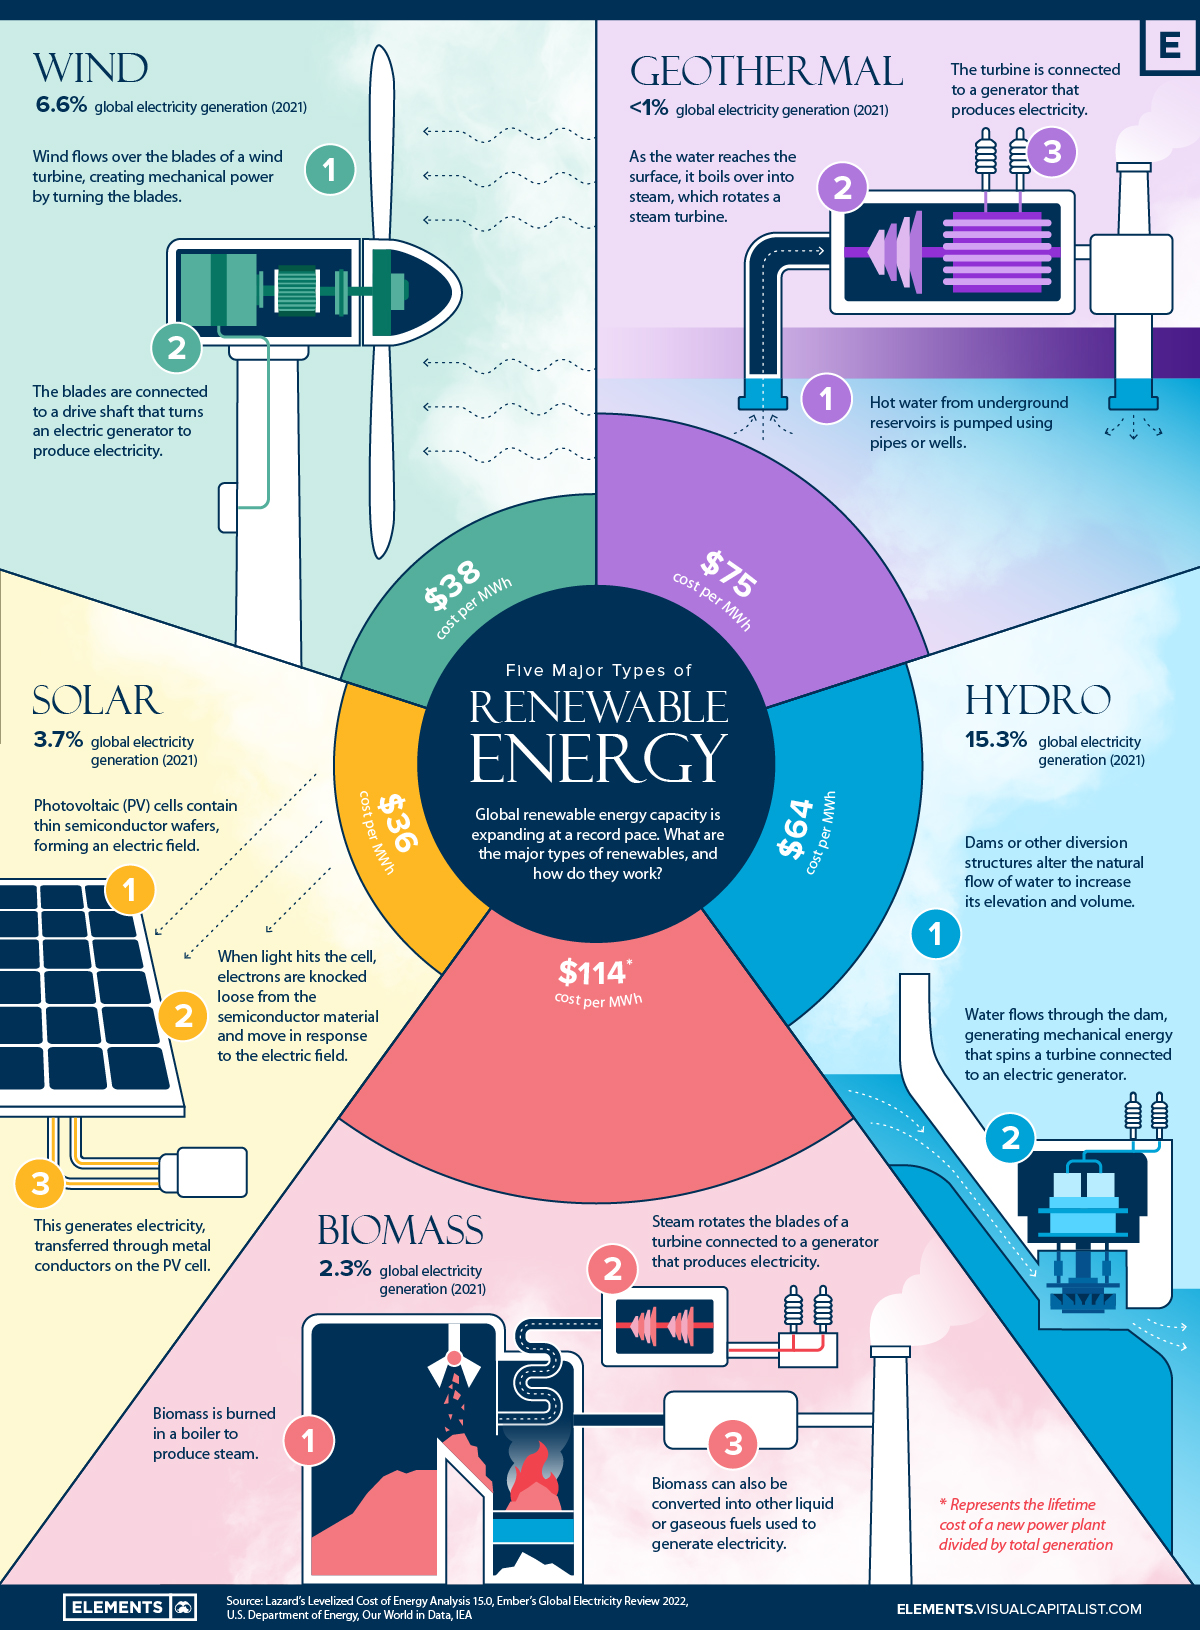 Major types of renewable energy